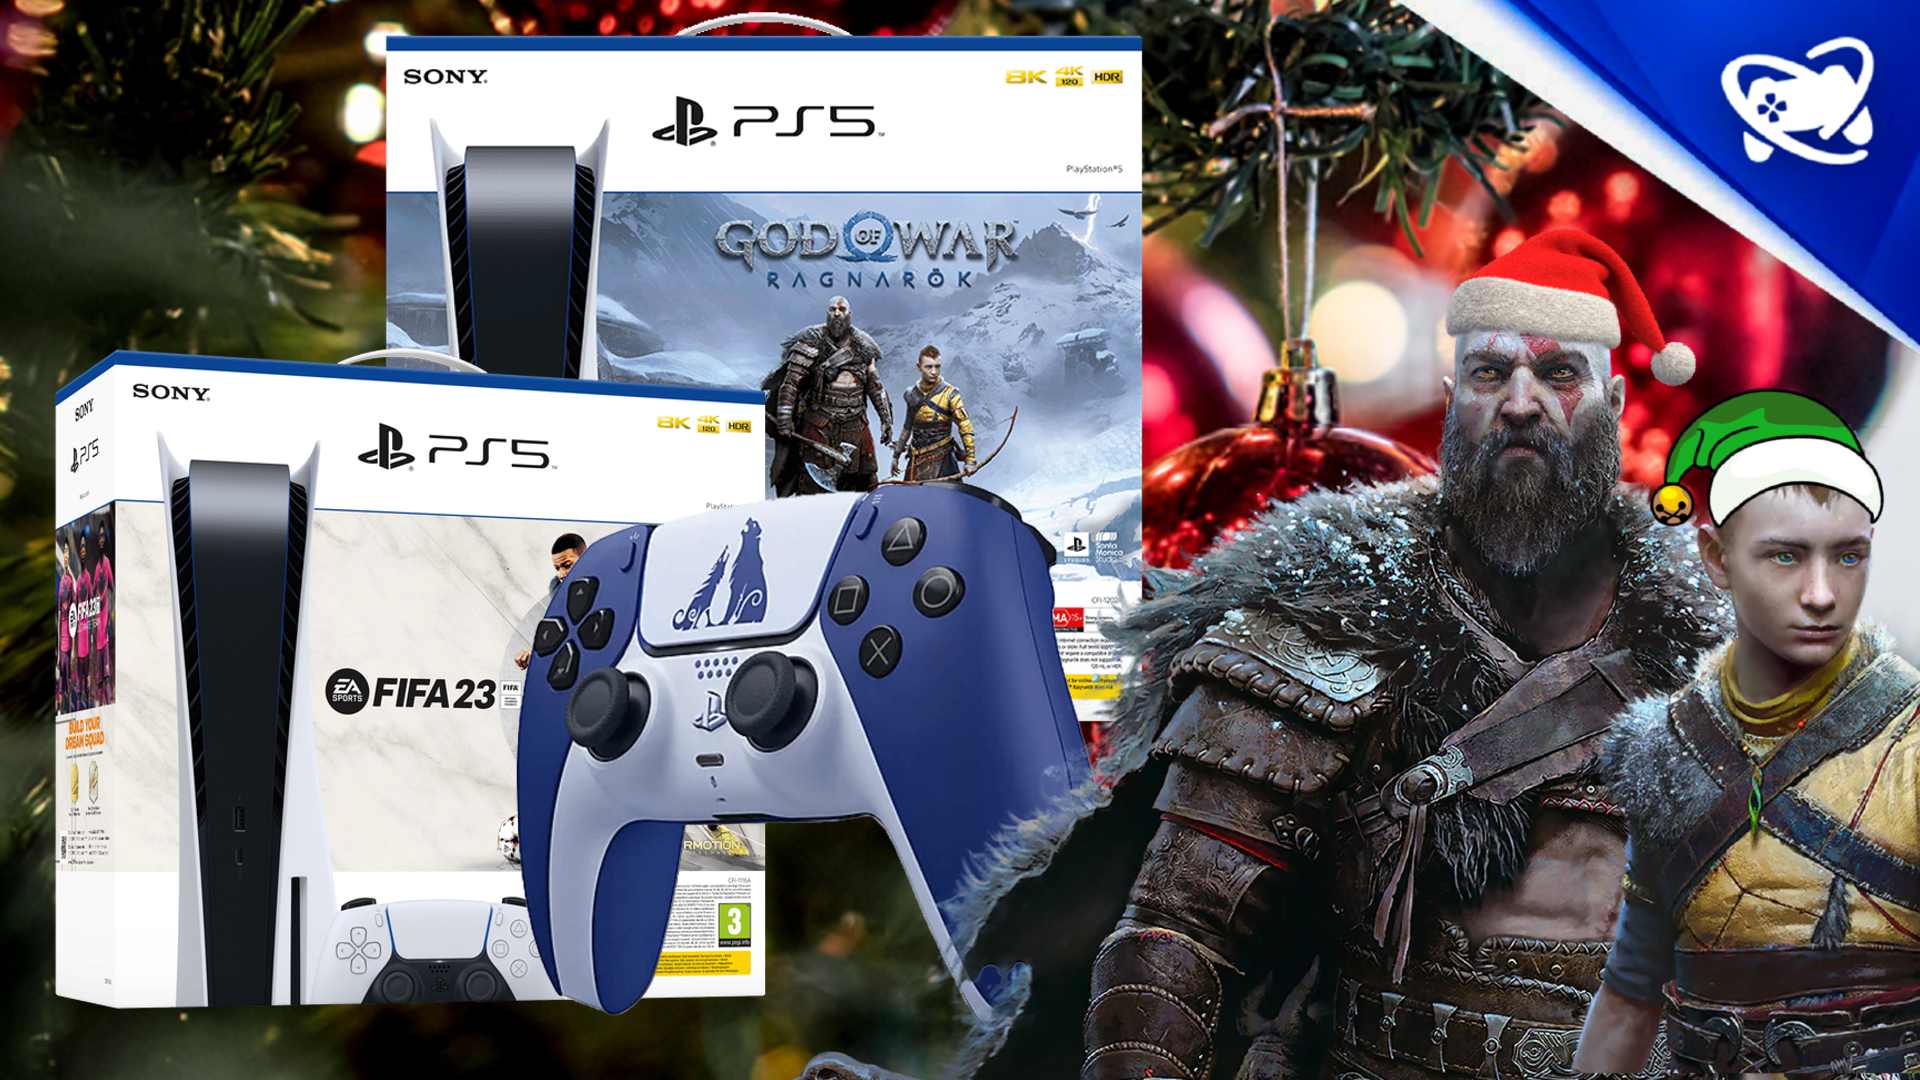 Sony planeja mega promoção 'Natal PlayStation' com descontos exclusivos  para PS5!